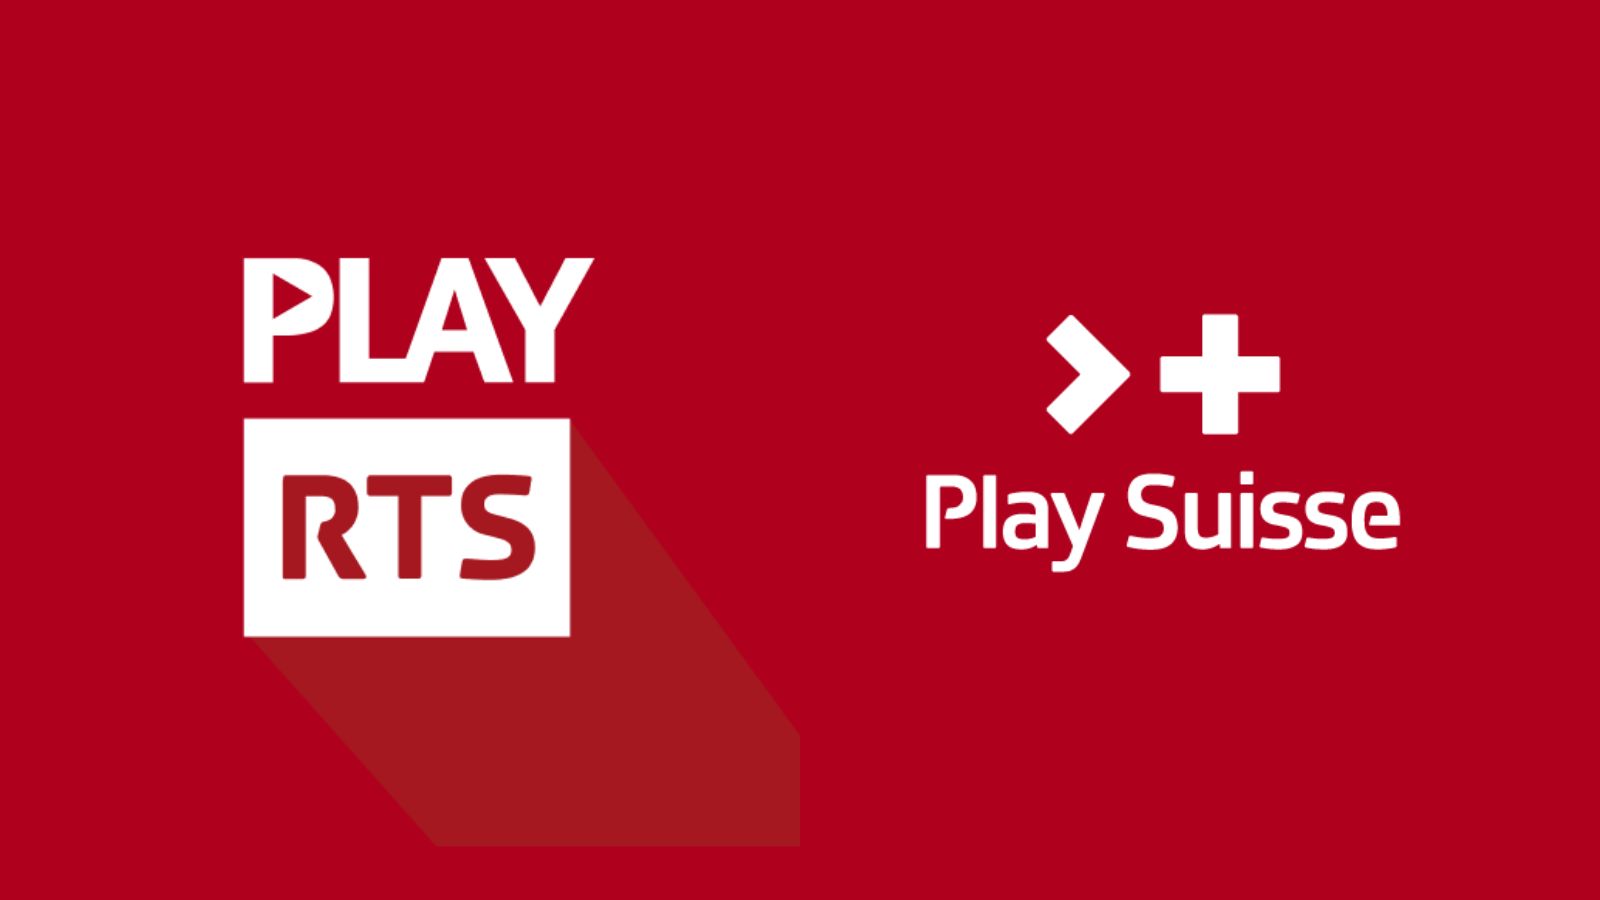 Quelle est la différence entre Play RTS et Play Suisse?